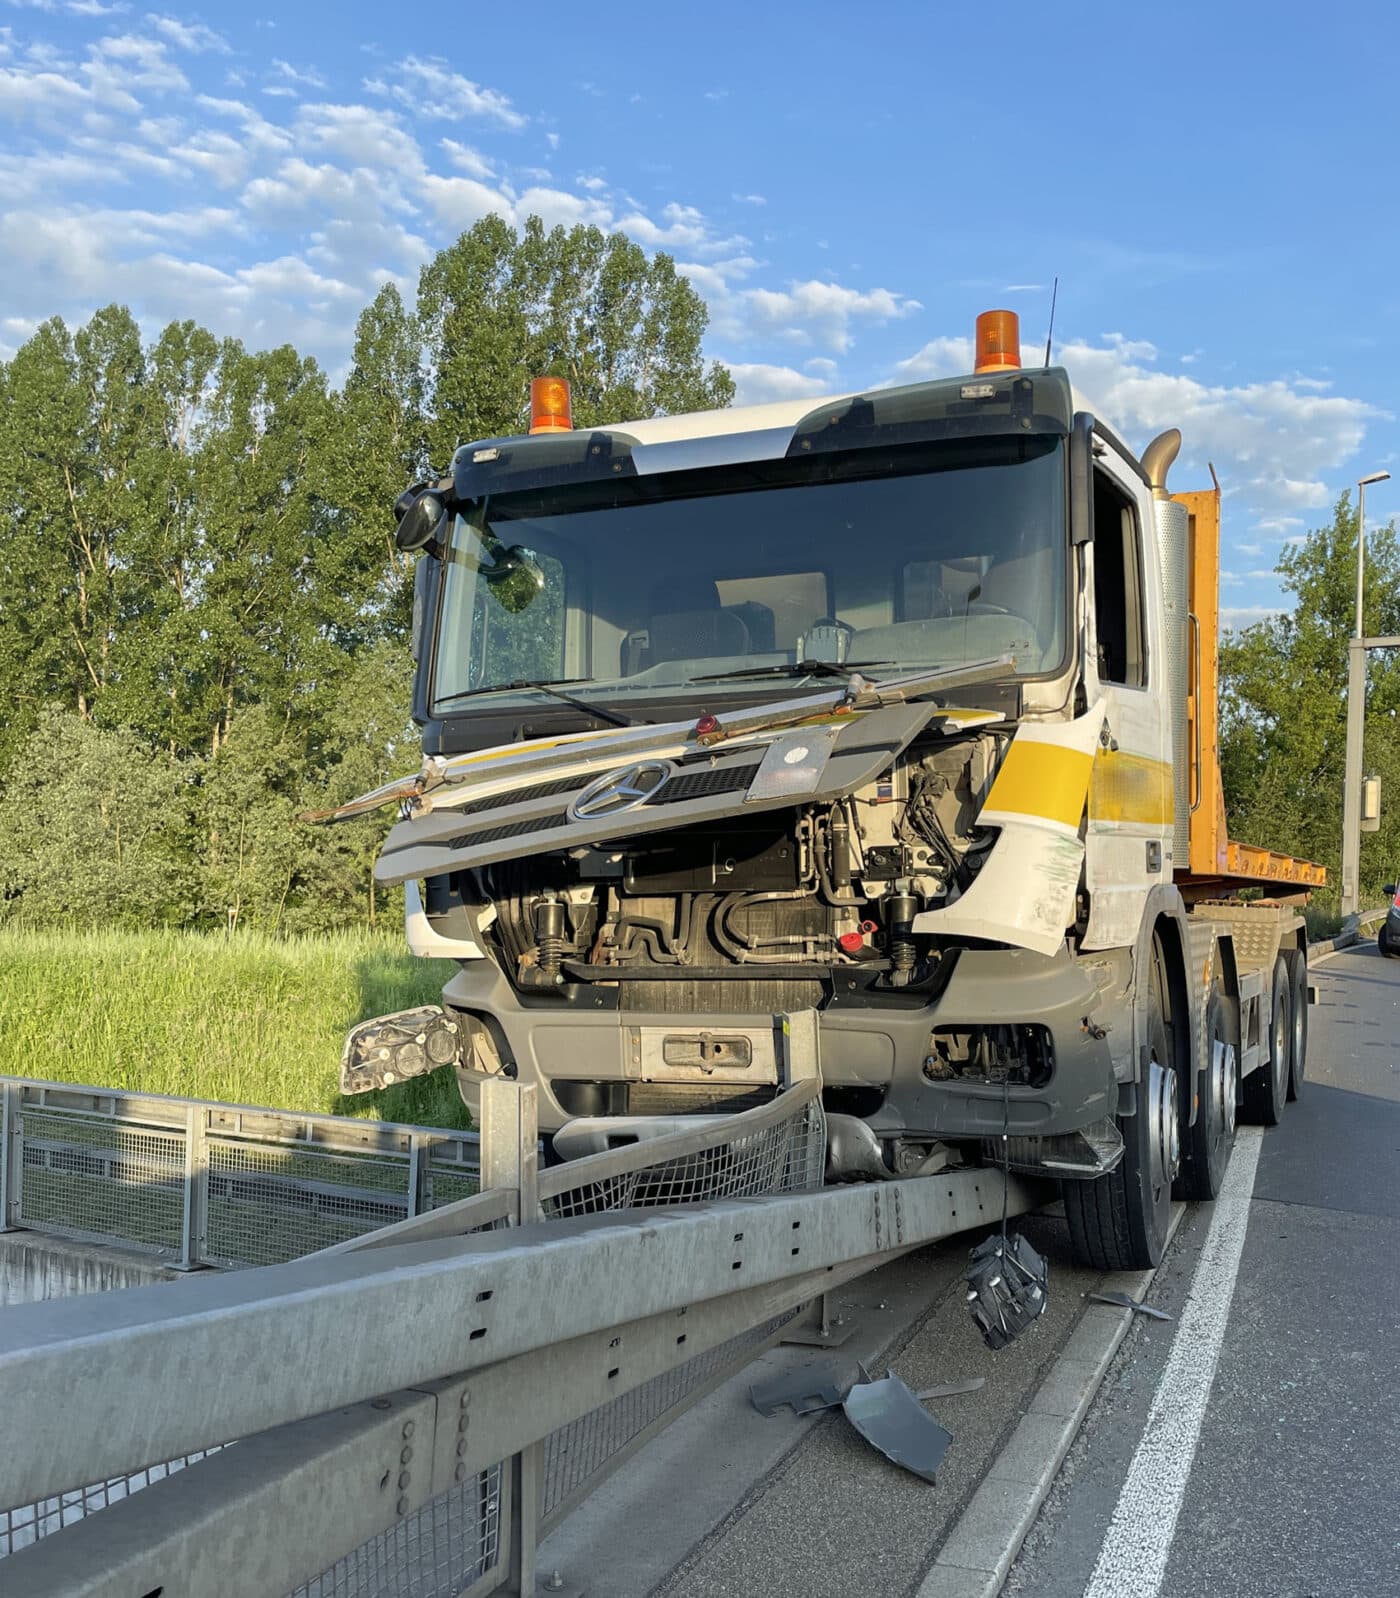 Kollision und Selbstunfall mit Lastwagen – Chauffeur verletzt